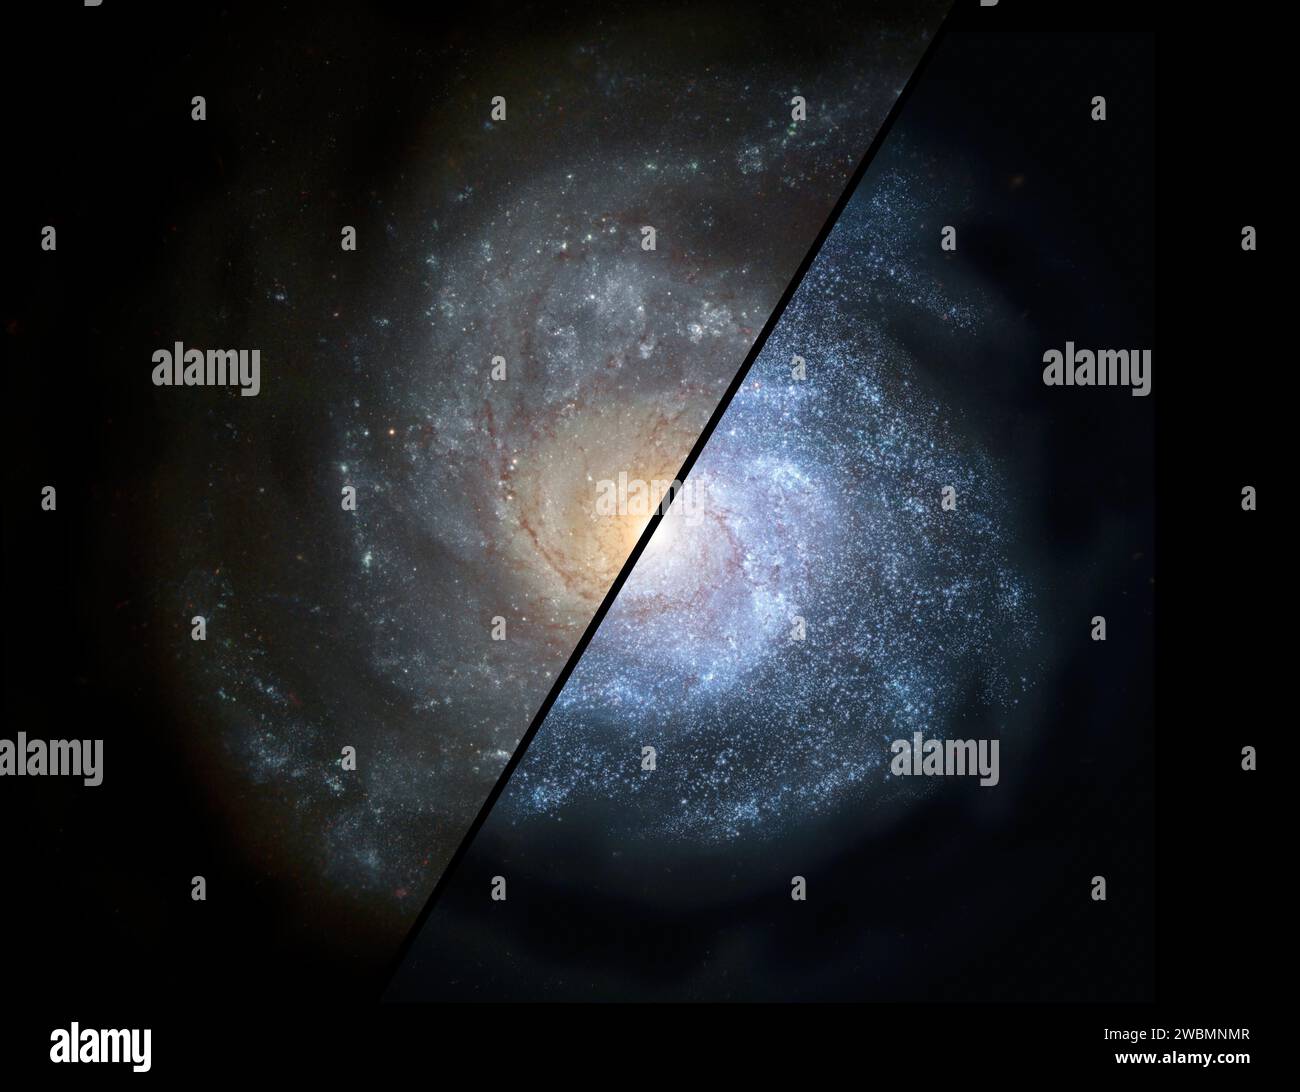 Il concetto di questo artista mostra come una normale galassia a spirale intorno al nostro universo locale (a sinistra) potrebbe aver guardato indietro nell'universo lontano, quando gli astronomi pensano che le galassie sarebbero state riempite da più grandi popolazioni di stelle calde e luminose (a destra). Foto Stock